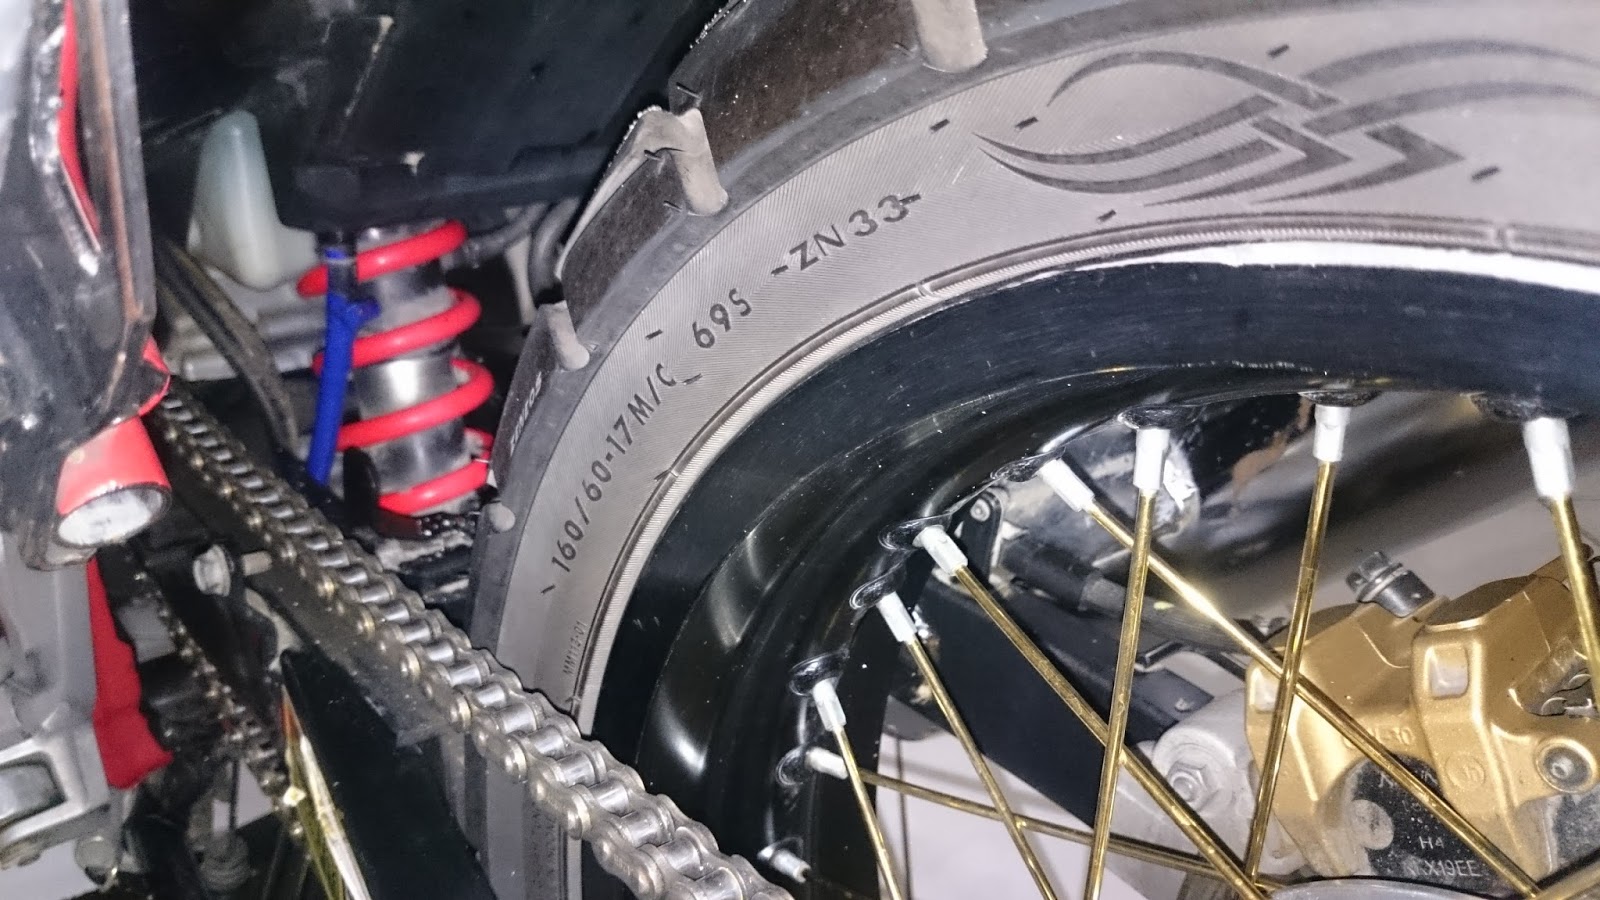 Modif CB150r pakai Velg Jari -Jari (Spoke wheel) ~ CBSF 